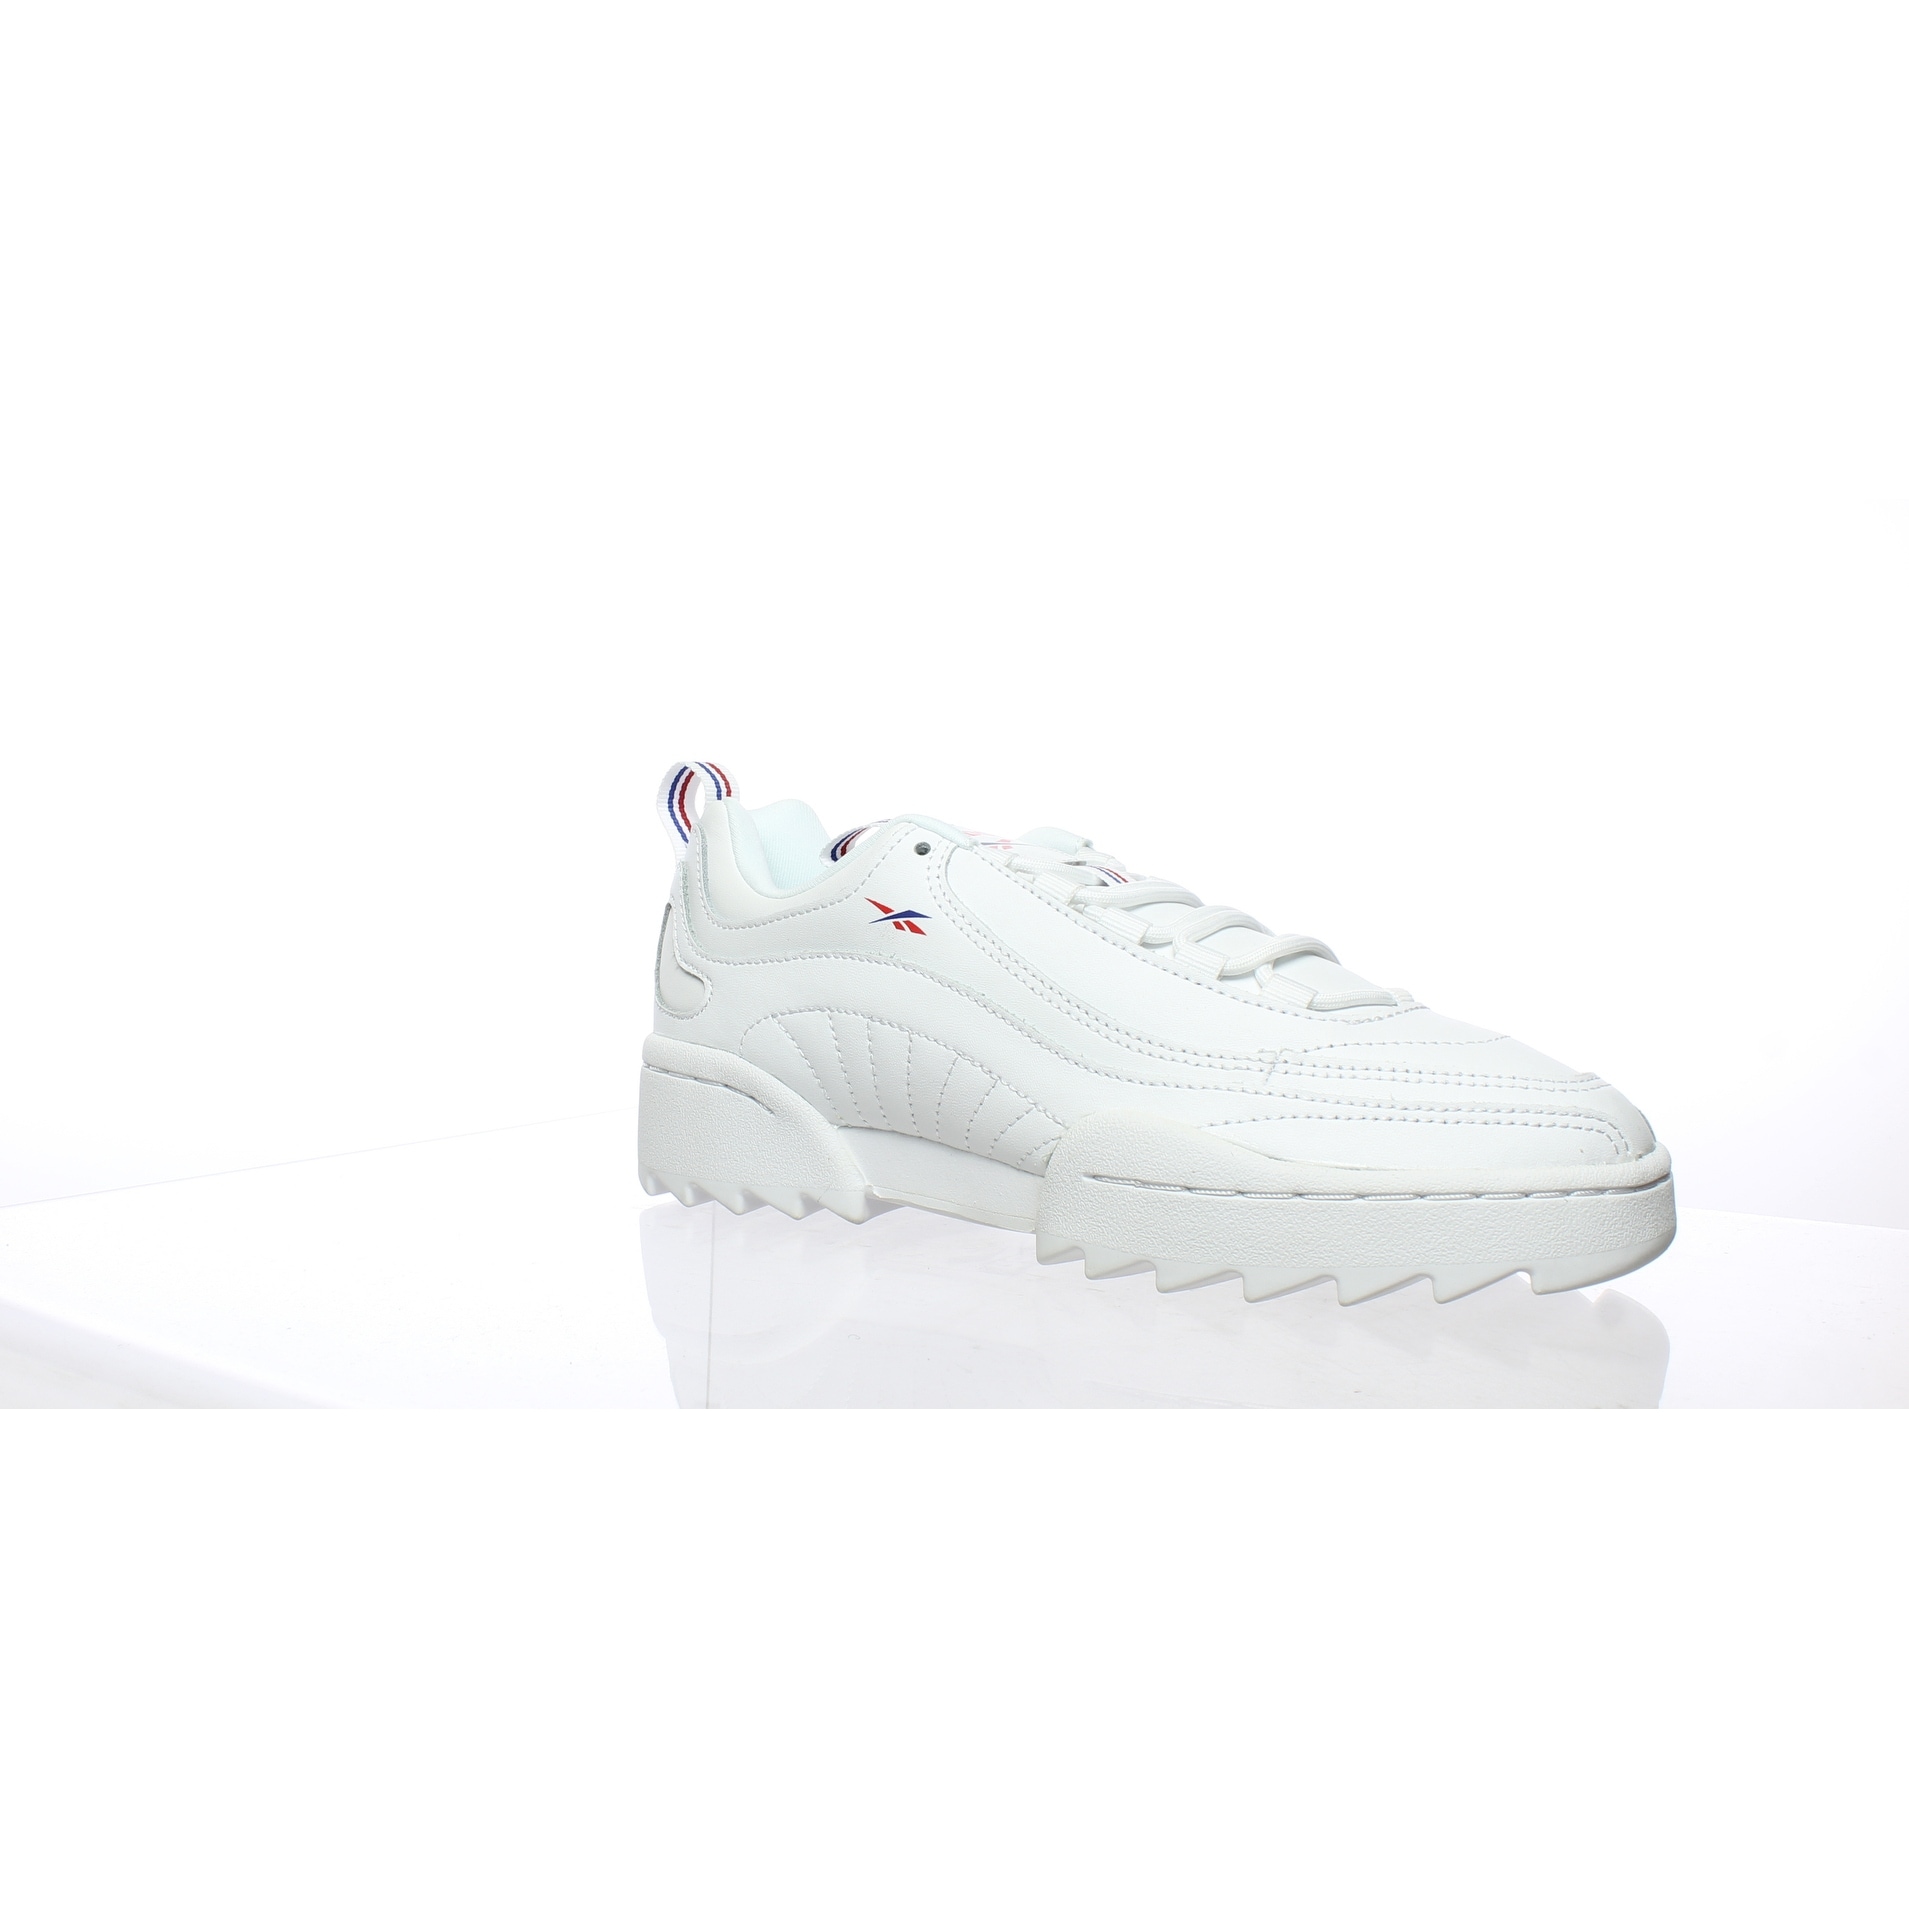 women's rivyx ripple sneakers in white